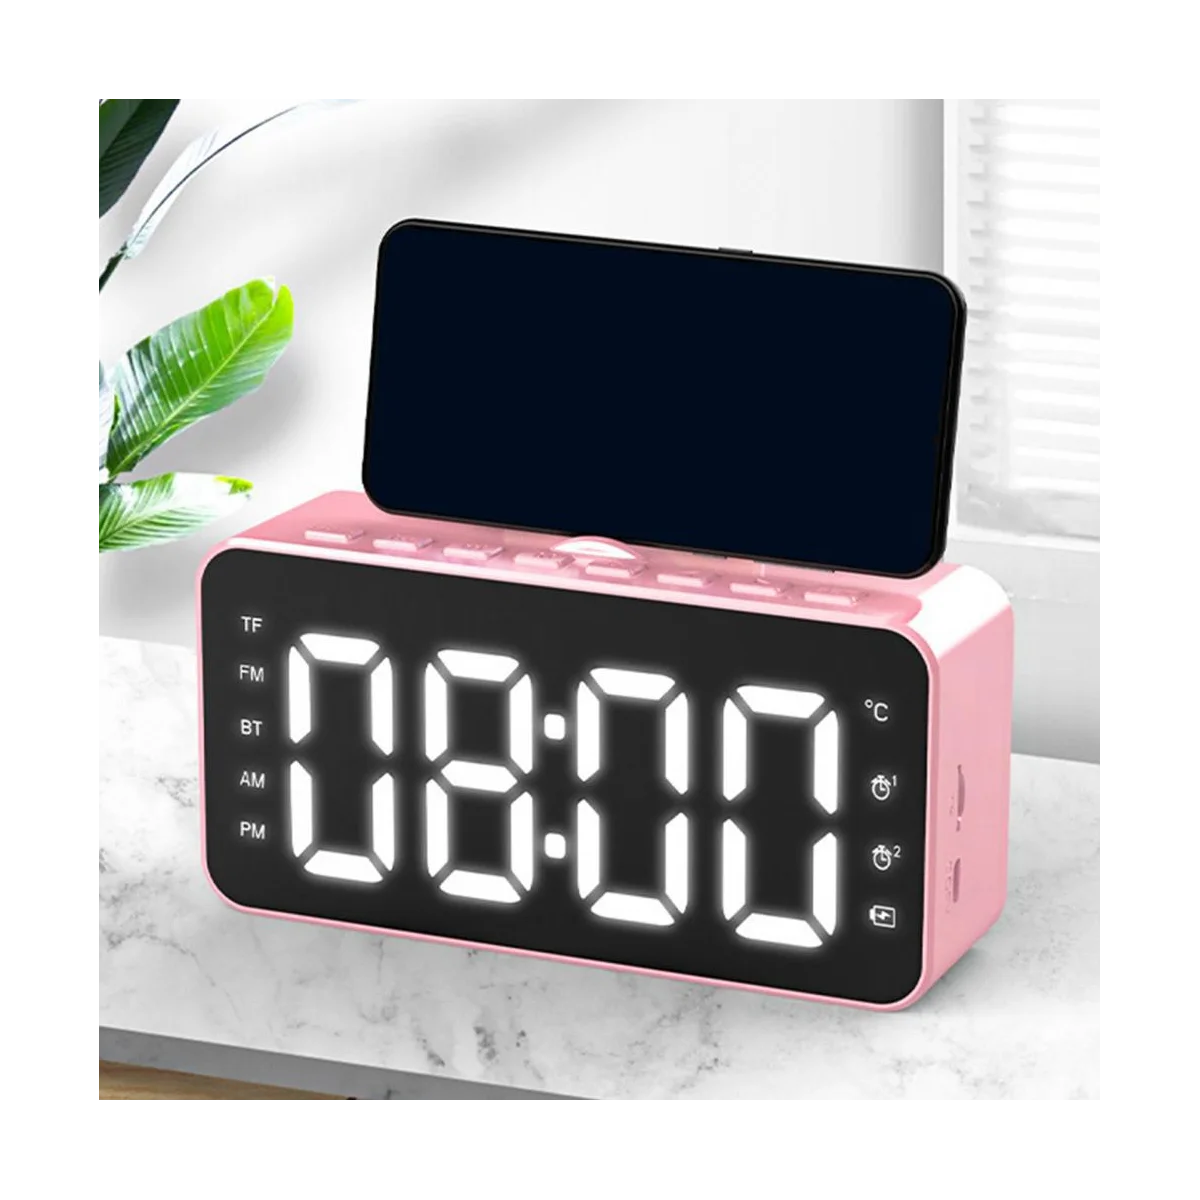 

Многофункциональный Будильник, настольные часы с ЖК-дисплеем, Bluetooth, воспроизведение музыки, цифровой будильник для офиса, розовый цвет